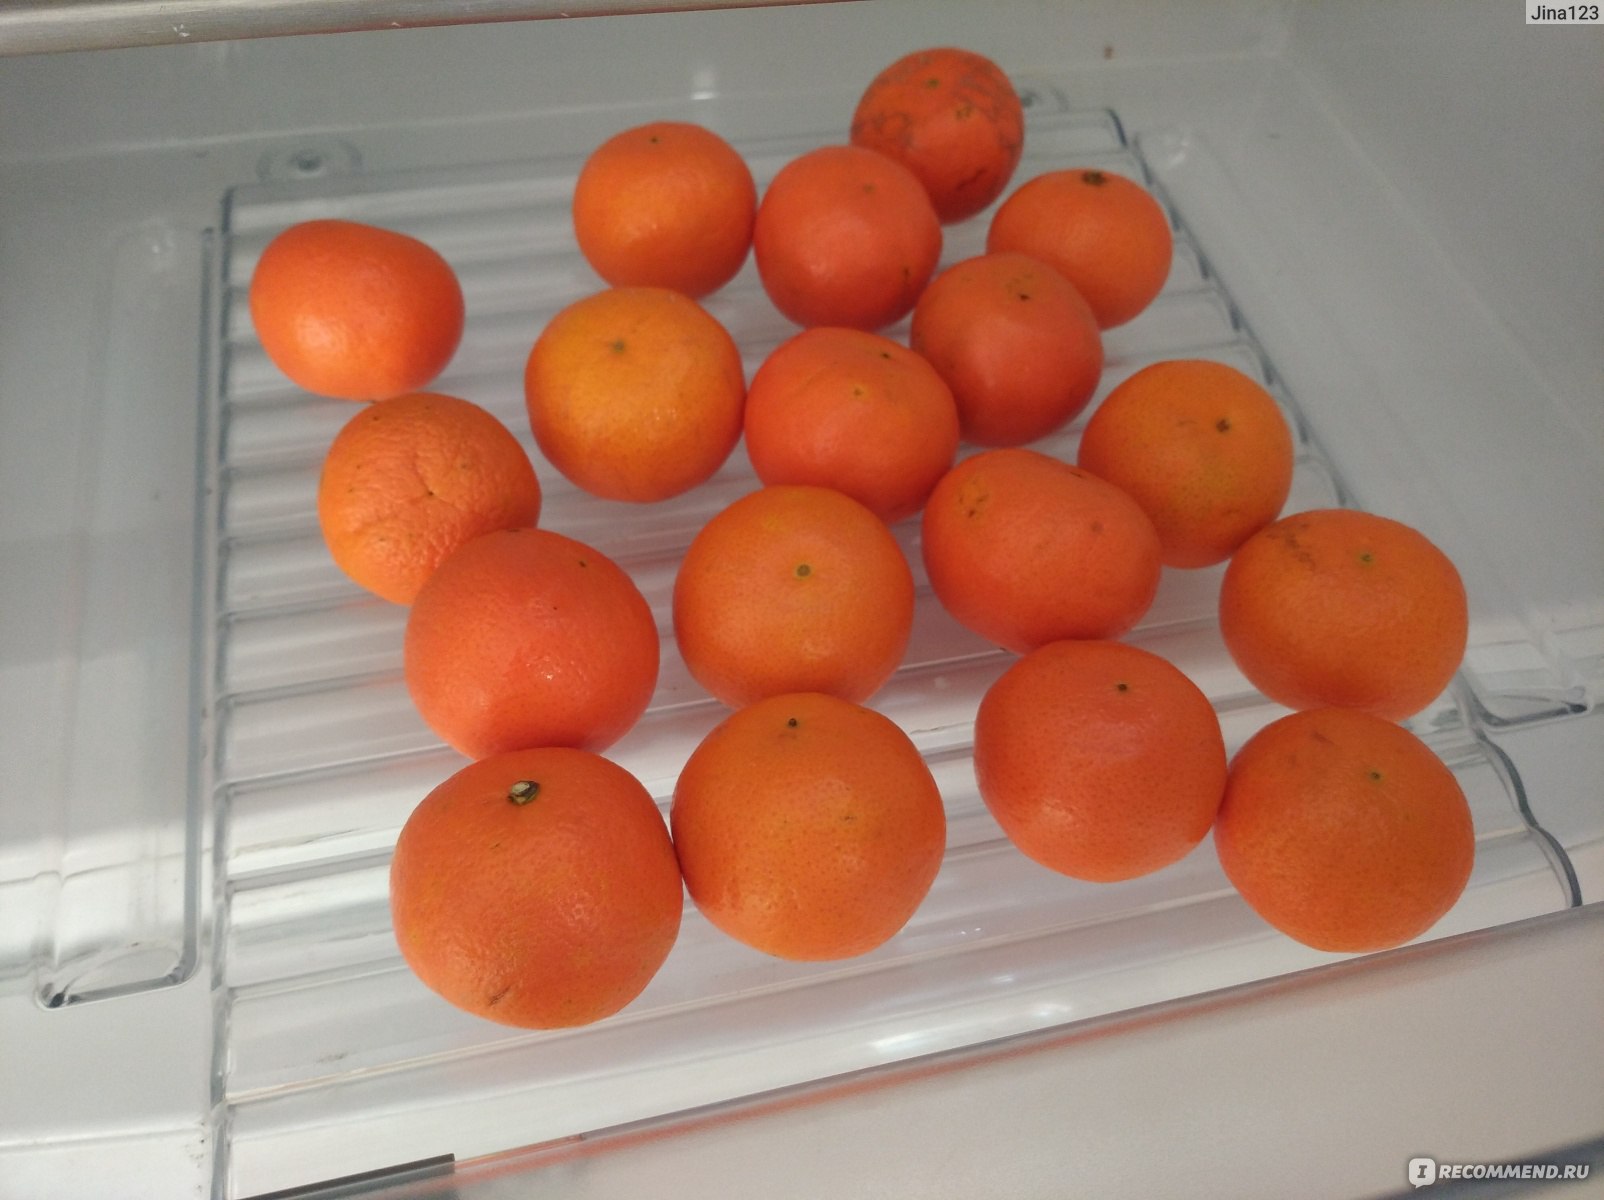 Мама купила несколько килограммов мандаринов. 10 Кг мандаринов. Мандариновая диета. Килограмм мандарин или мандаринов как правильно. Mandarin_ot_nami Сочи.